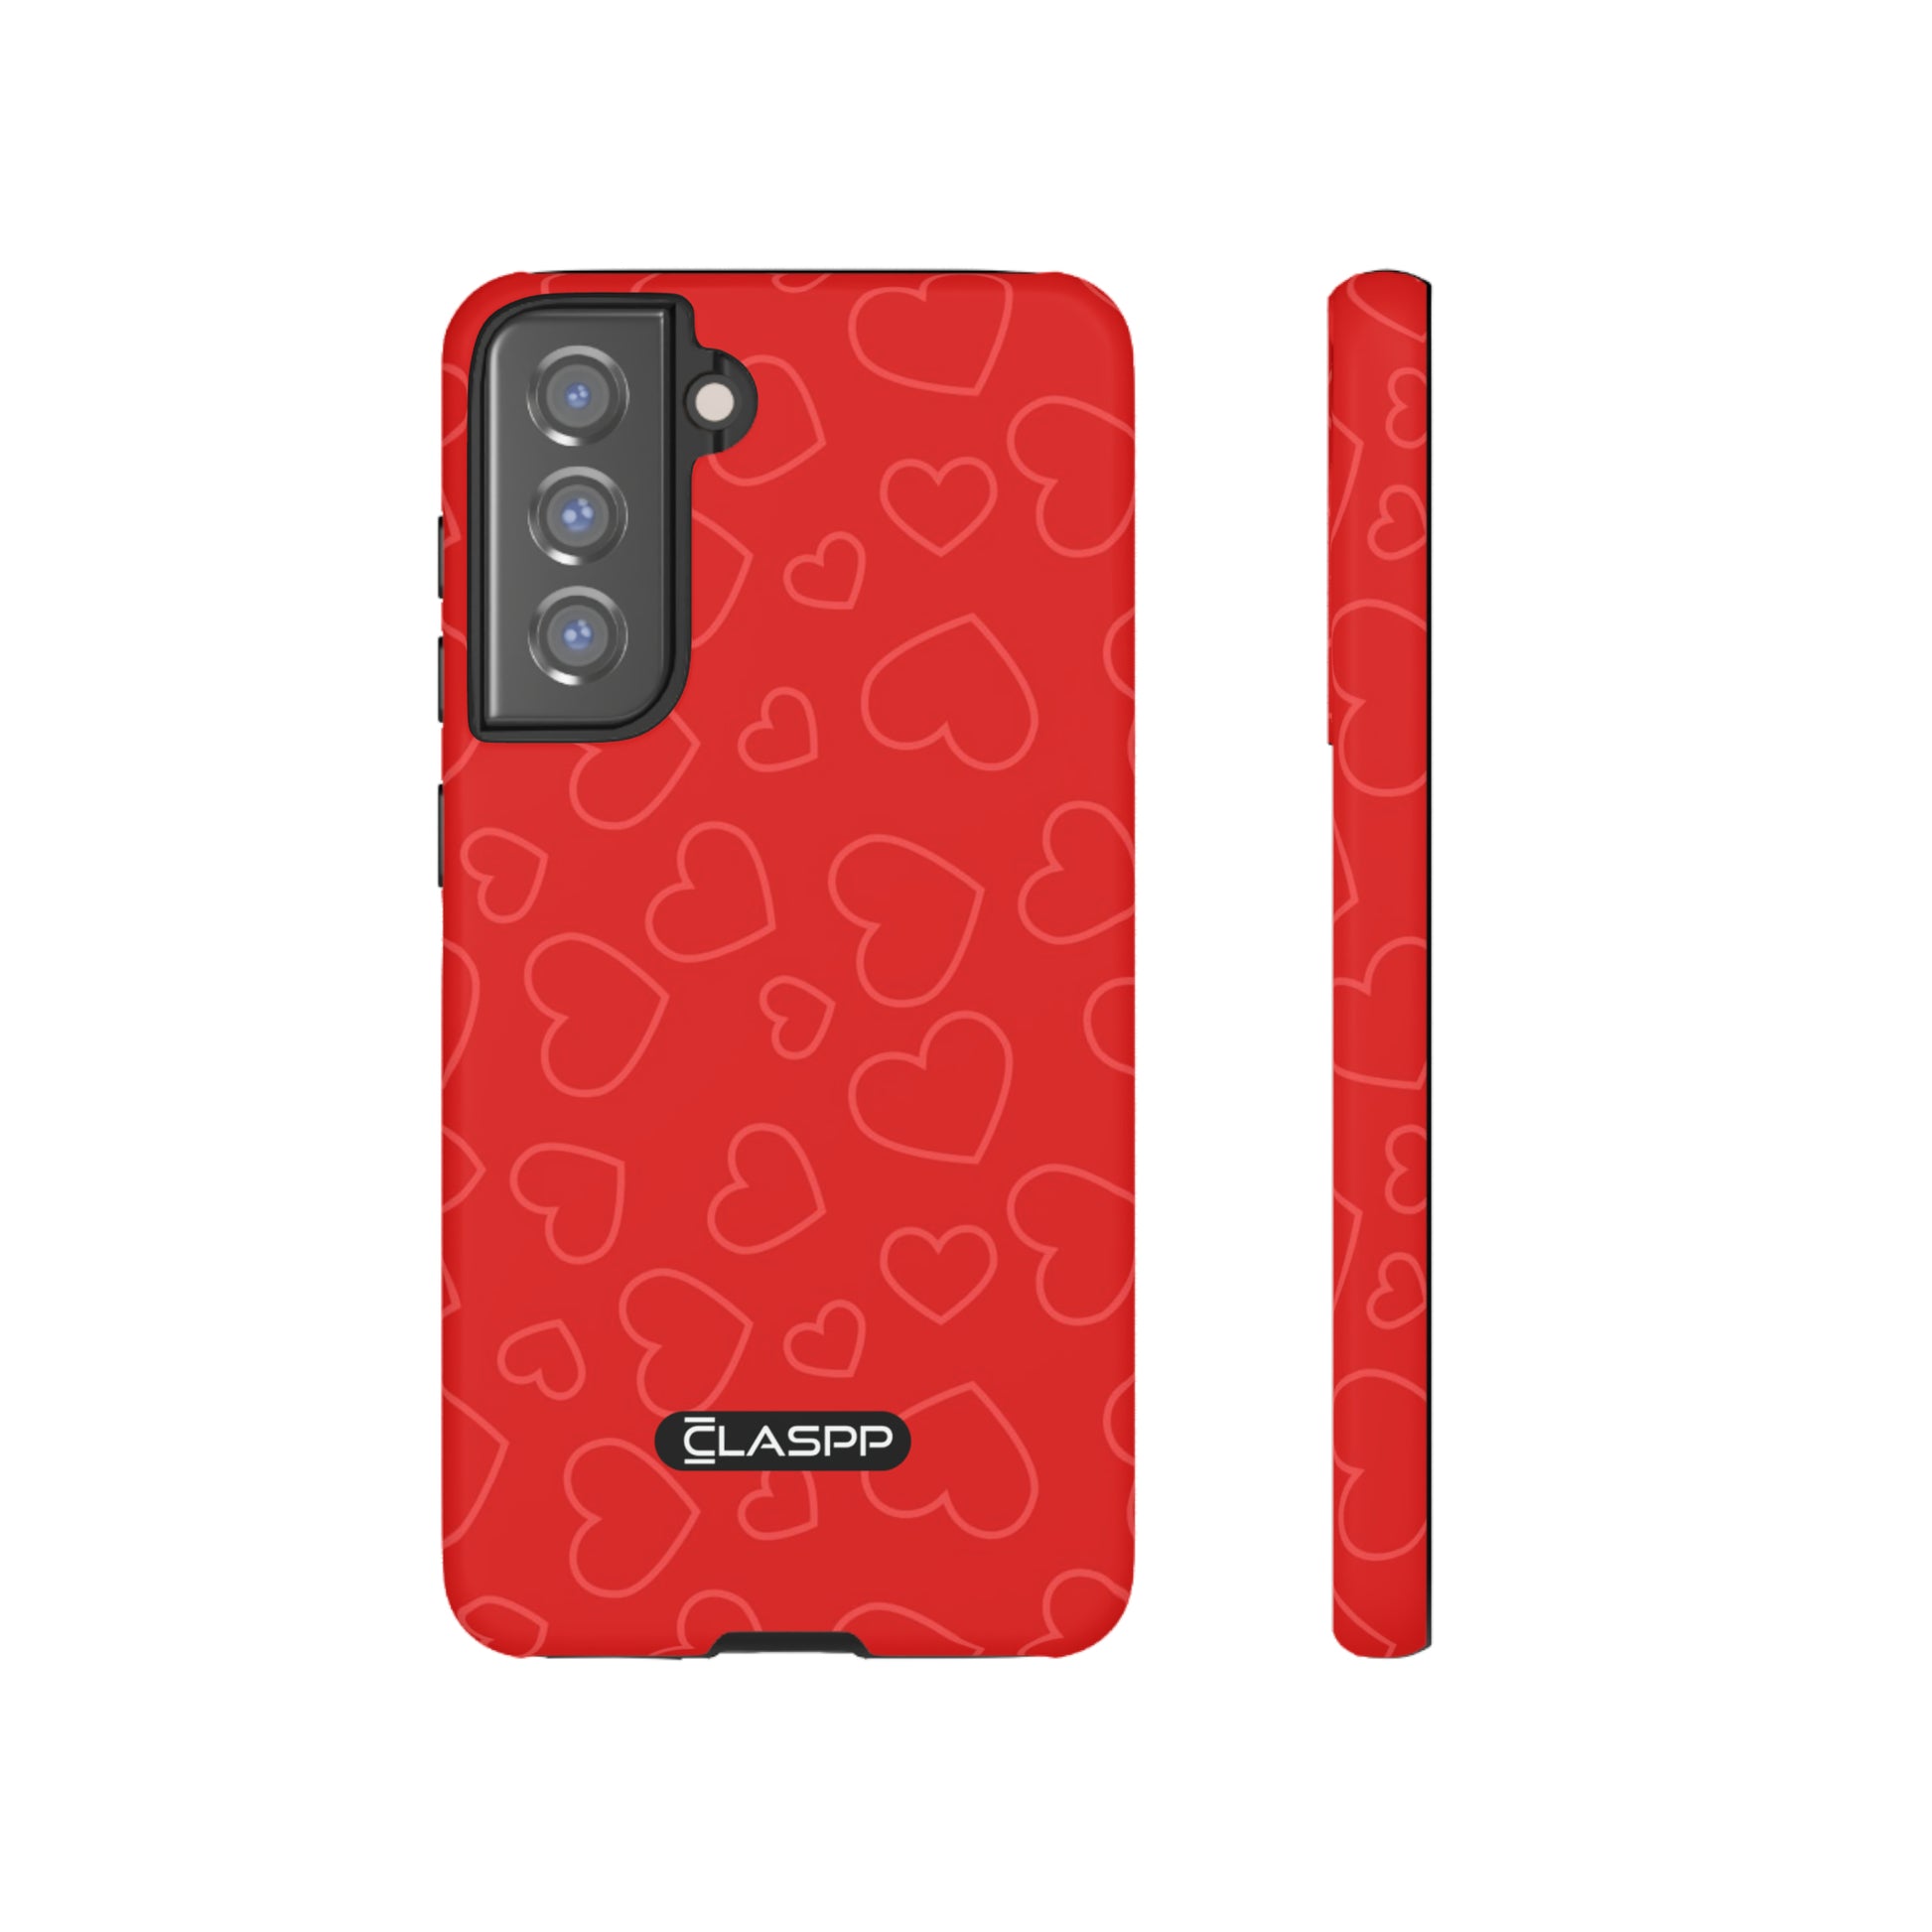 Samsung Galaxy S21 FE Valentine's Day phone case